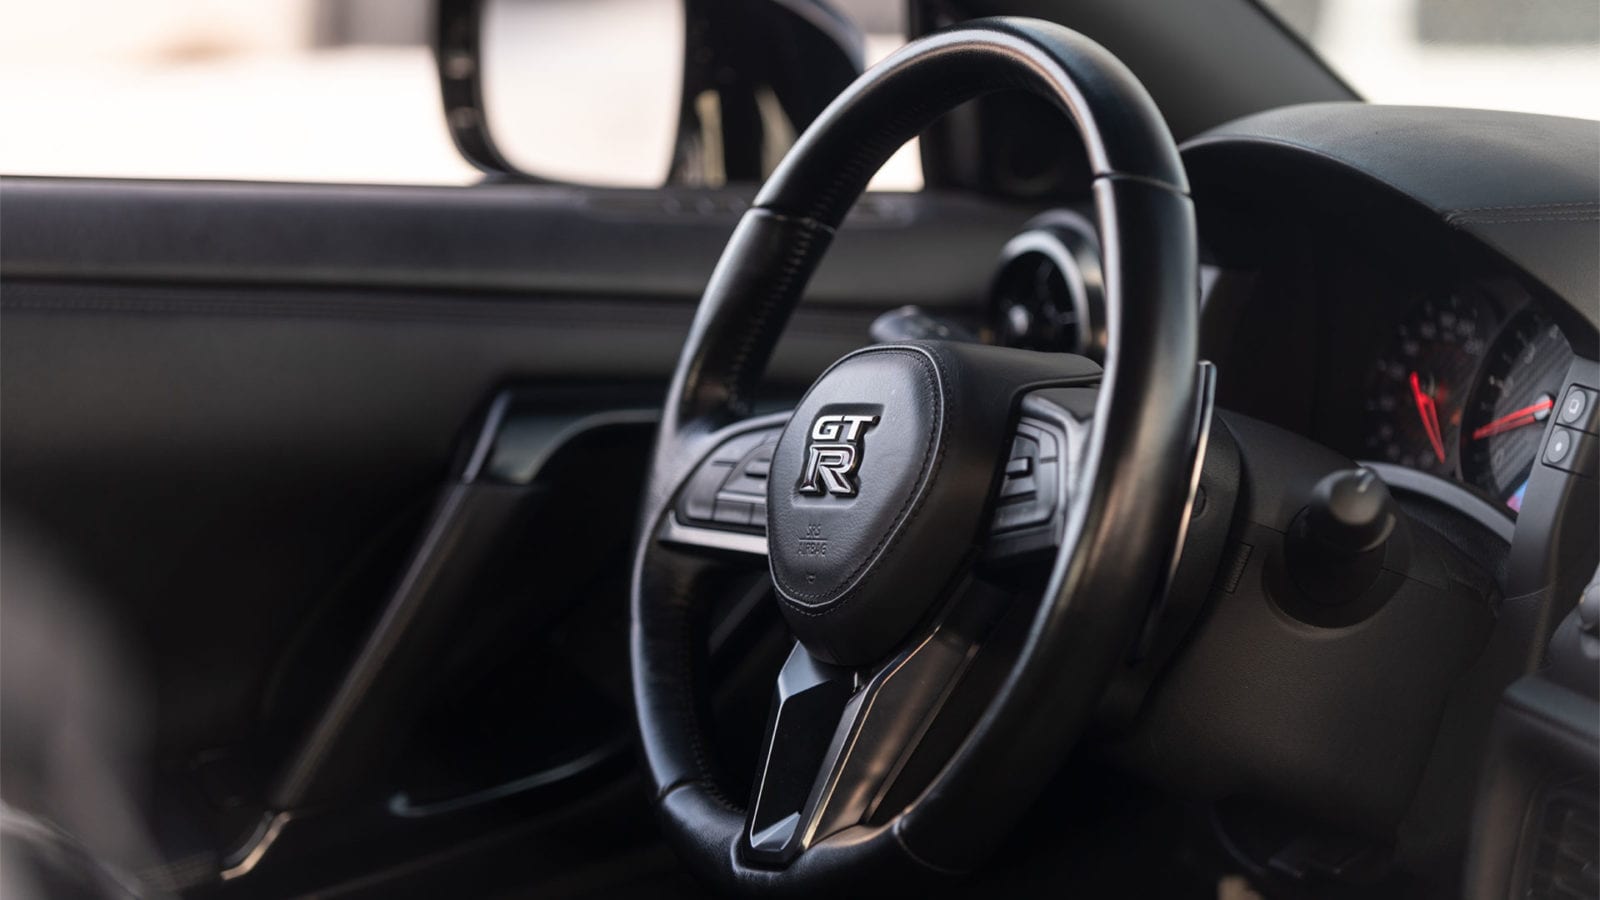 Nissan GT-R interior